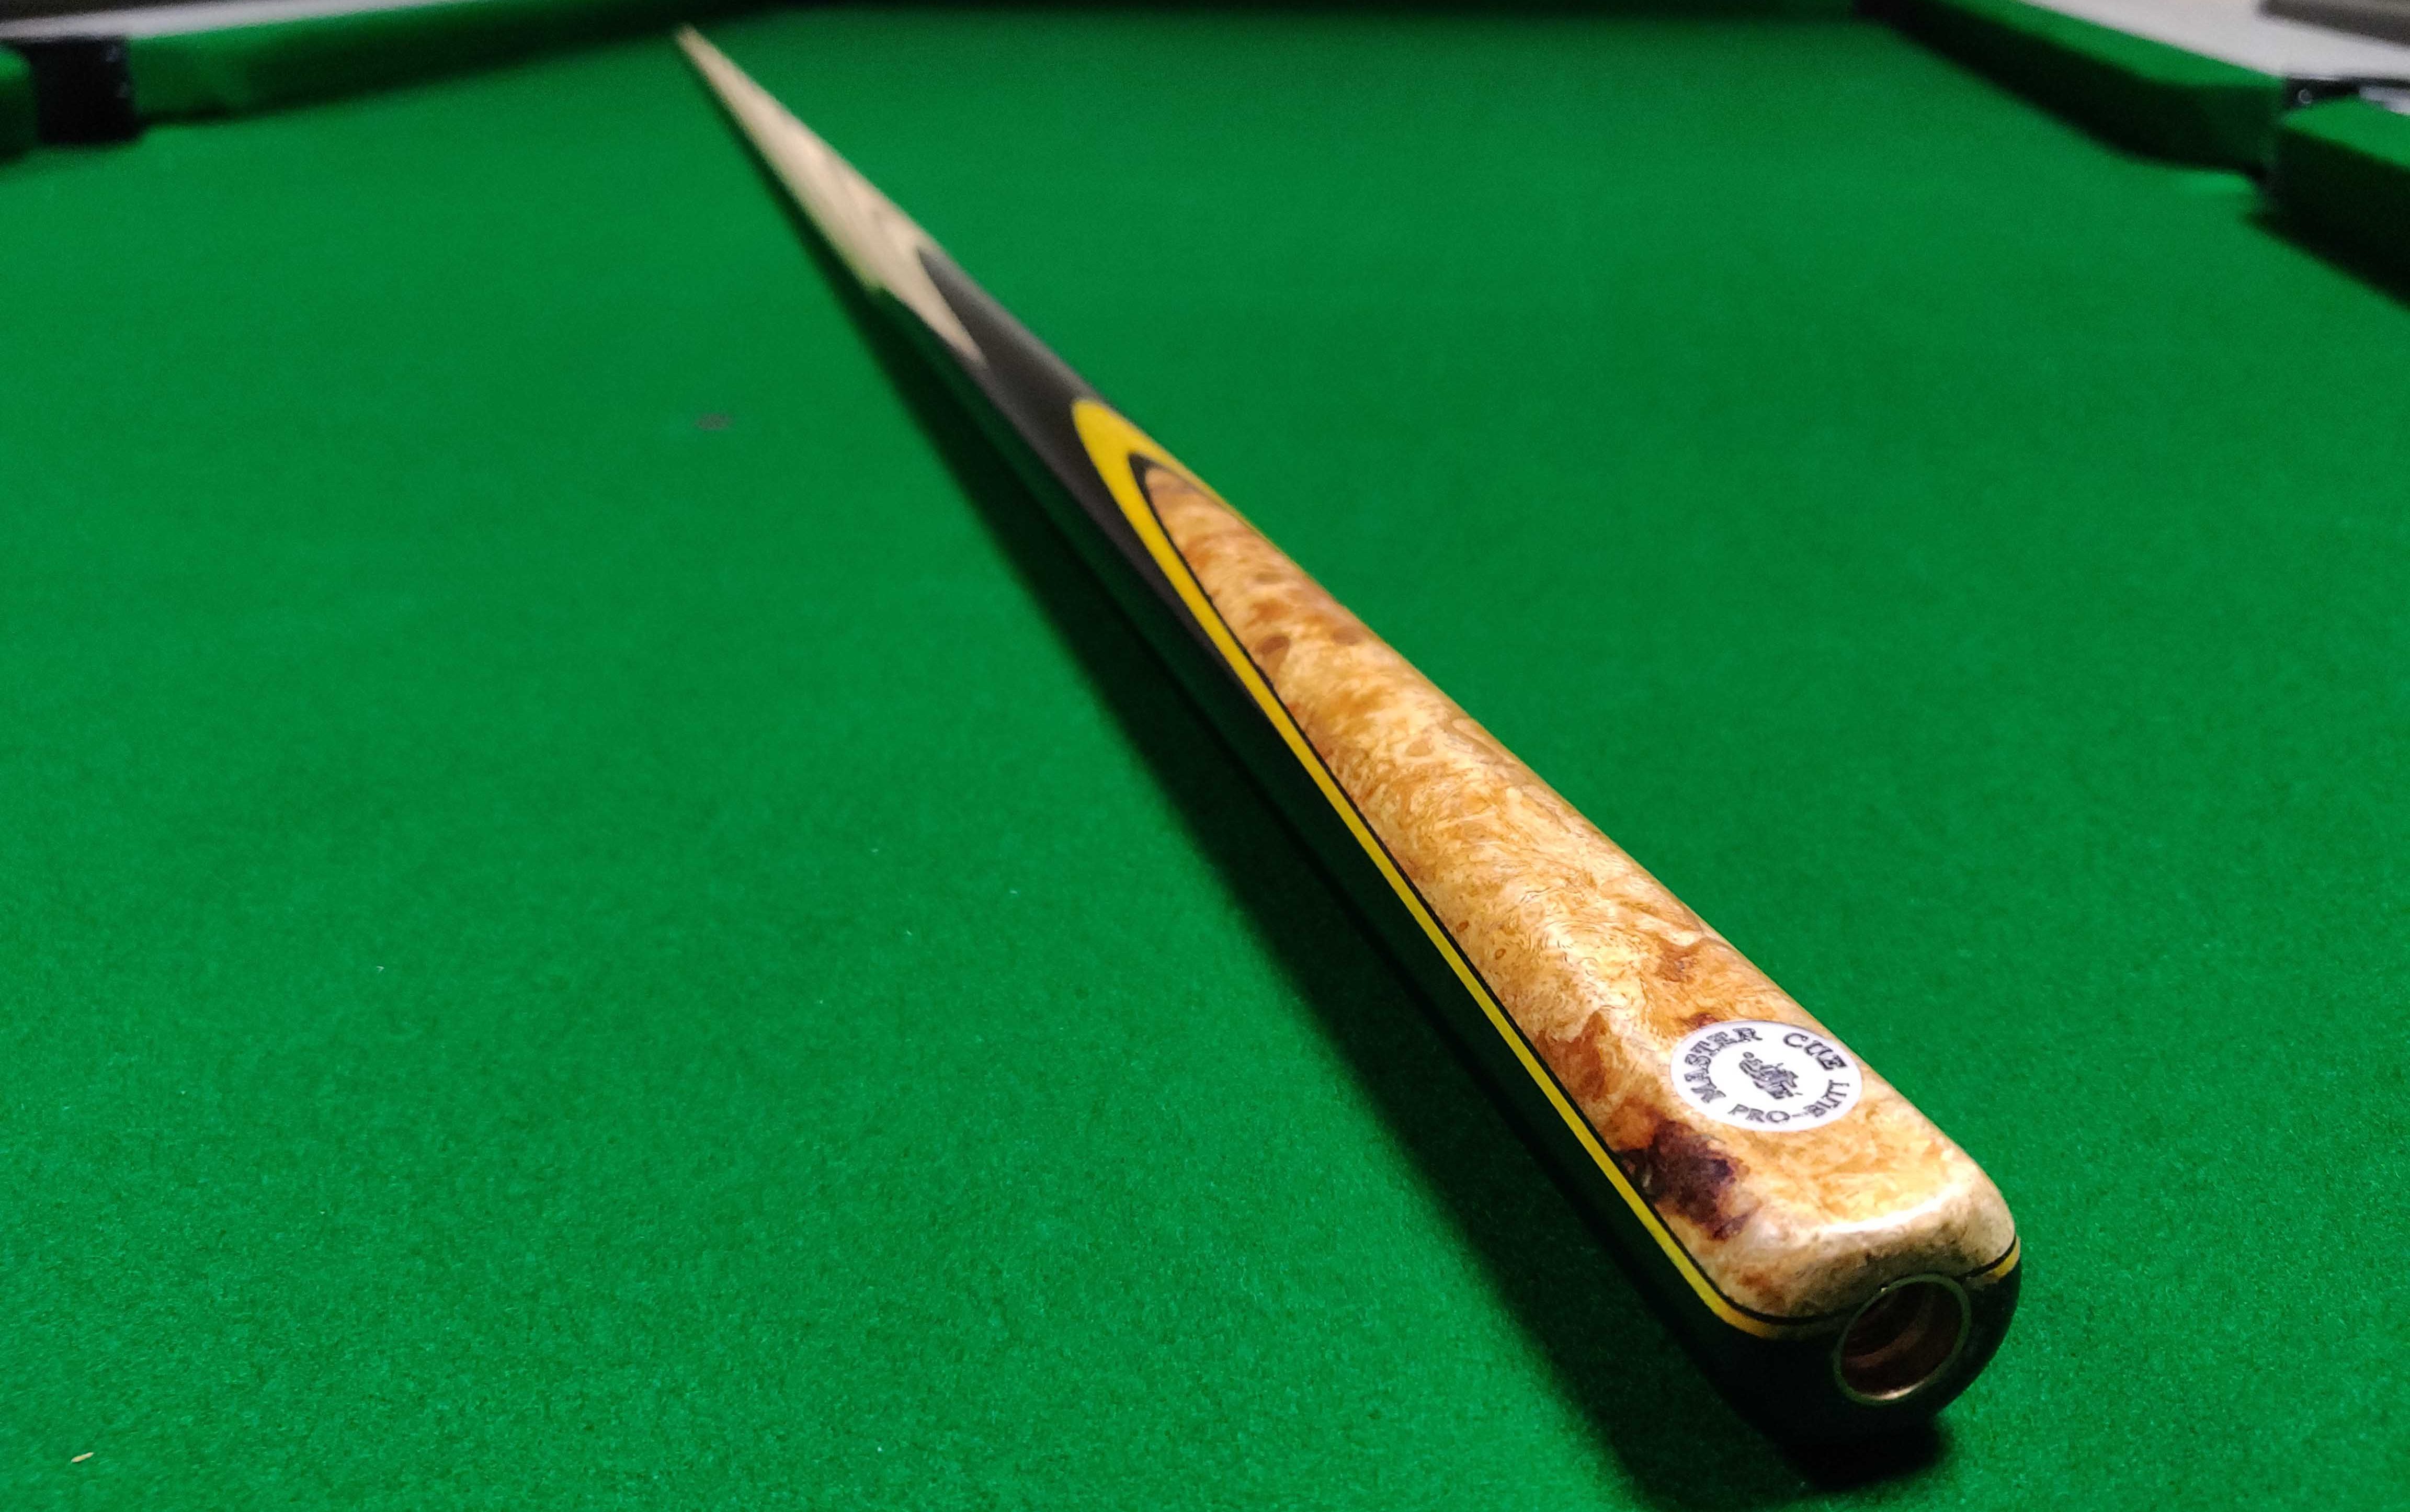 Tbest Snooker Billard Craie Sac PU Cuir Noir Cue Conseils Poudre Porte-Craie /étui Portable Pochette Sac Noir